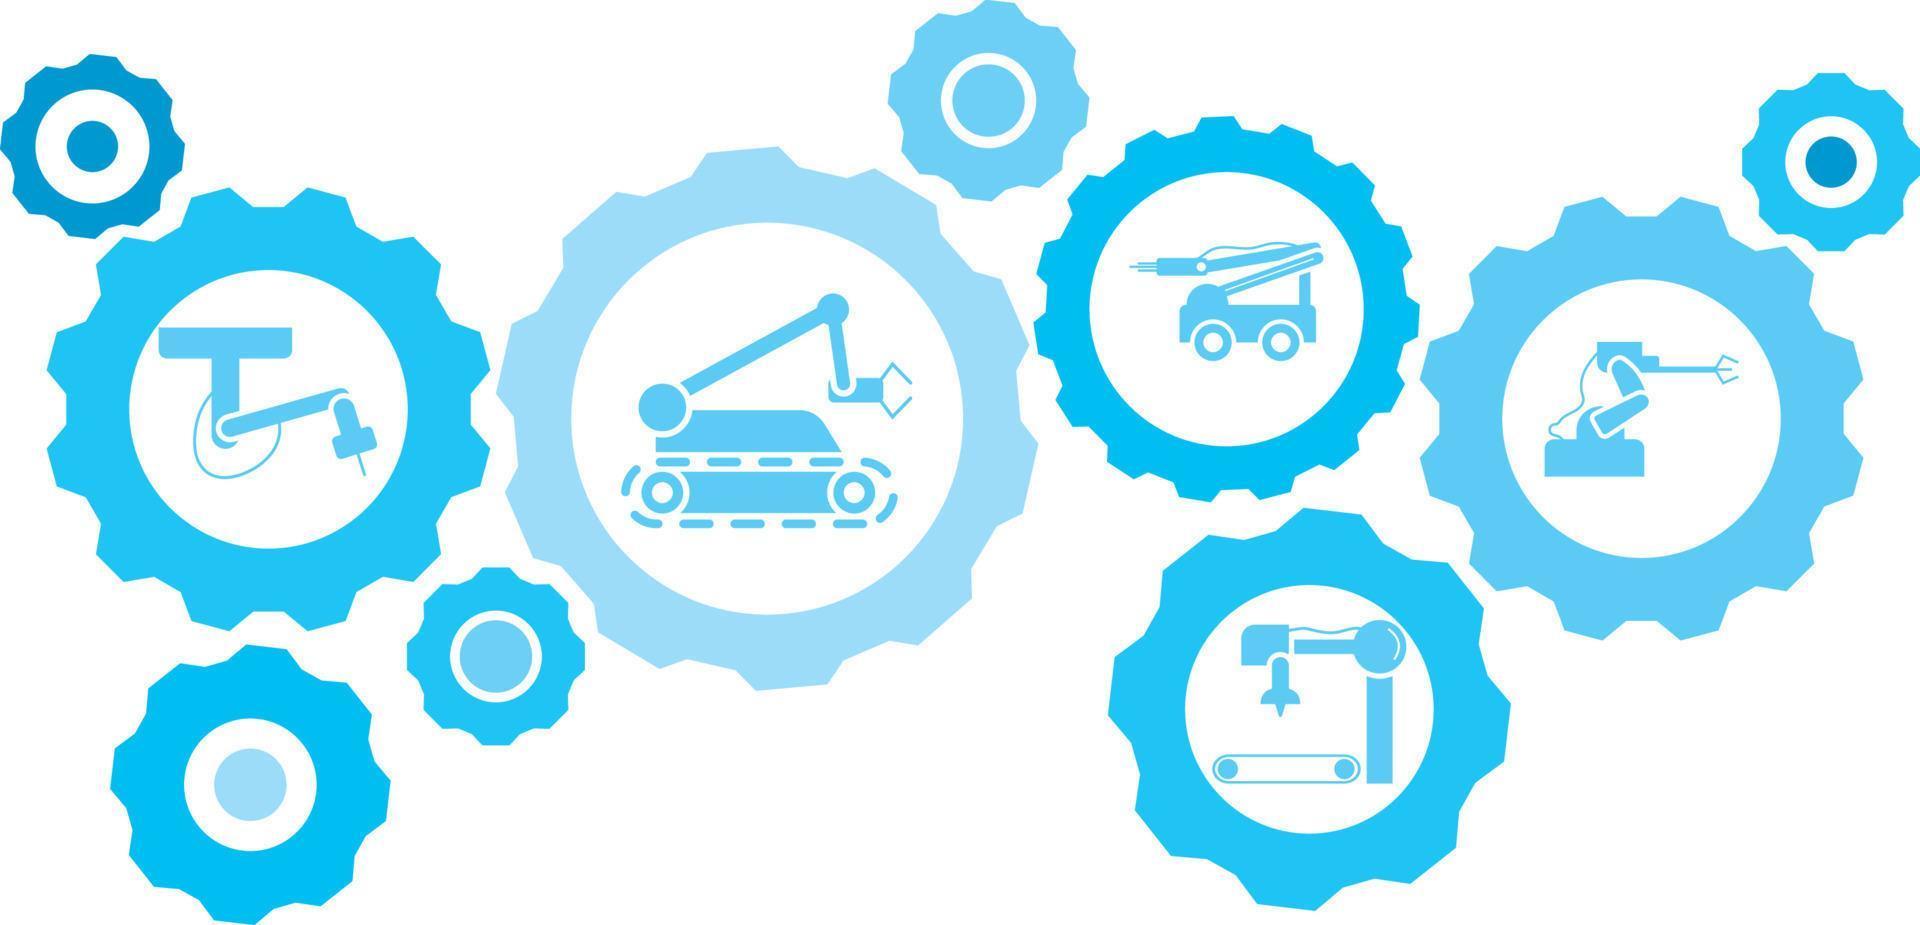 robot, ikon, teknologi, industri, fabrik blå redskap uppsättning. abstrakt bakgrund med ansluten kugghjul och ikoner för logistik, service, frakt, distribution, transport, marknadsföra, kommunicera begrepp vektor